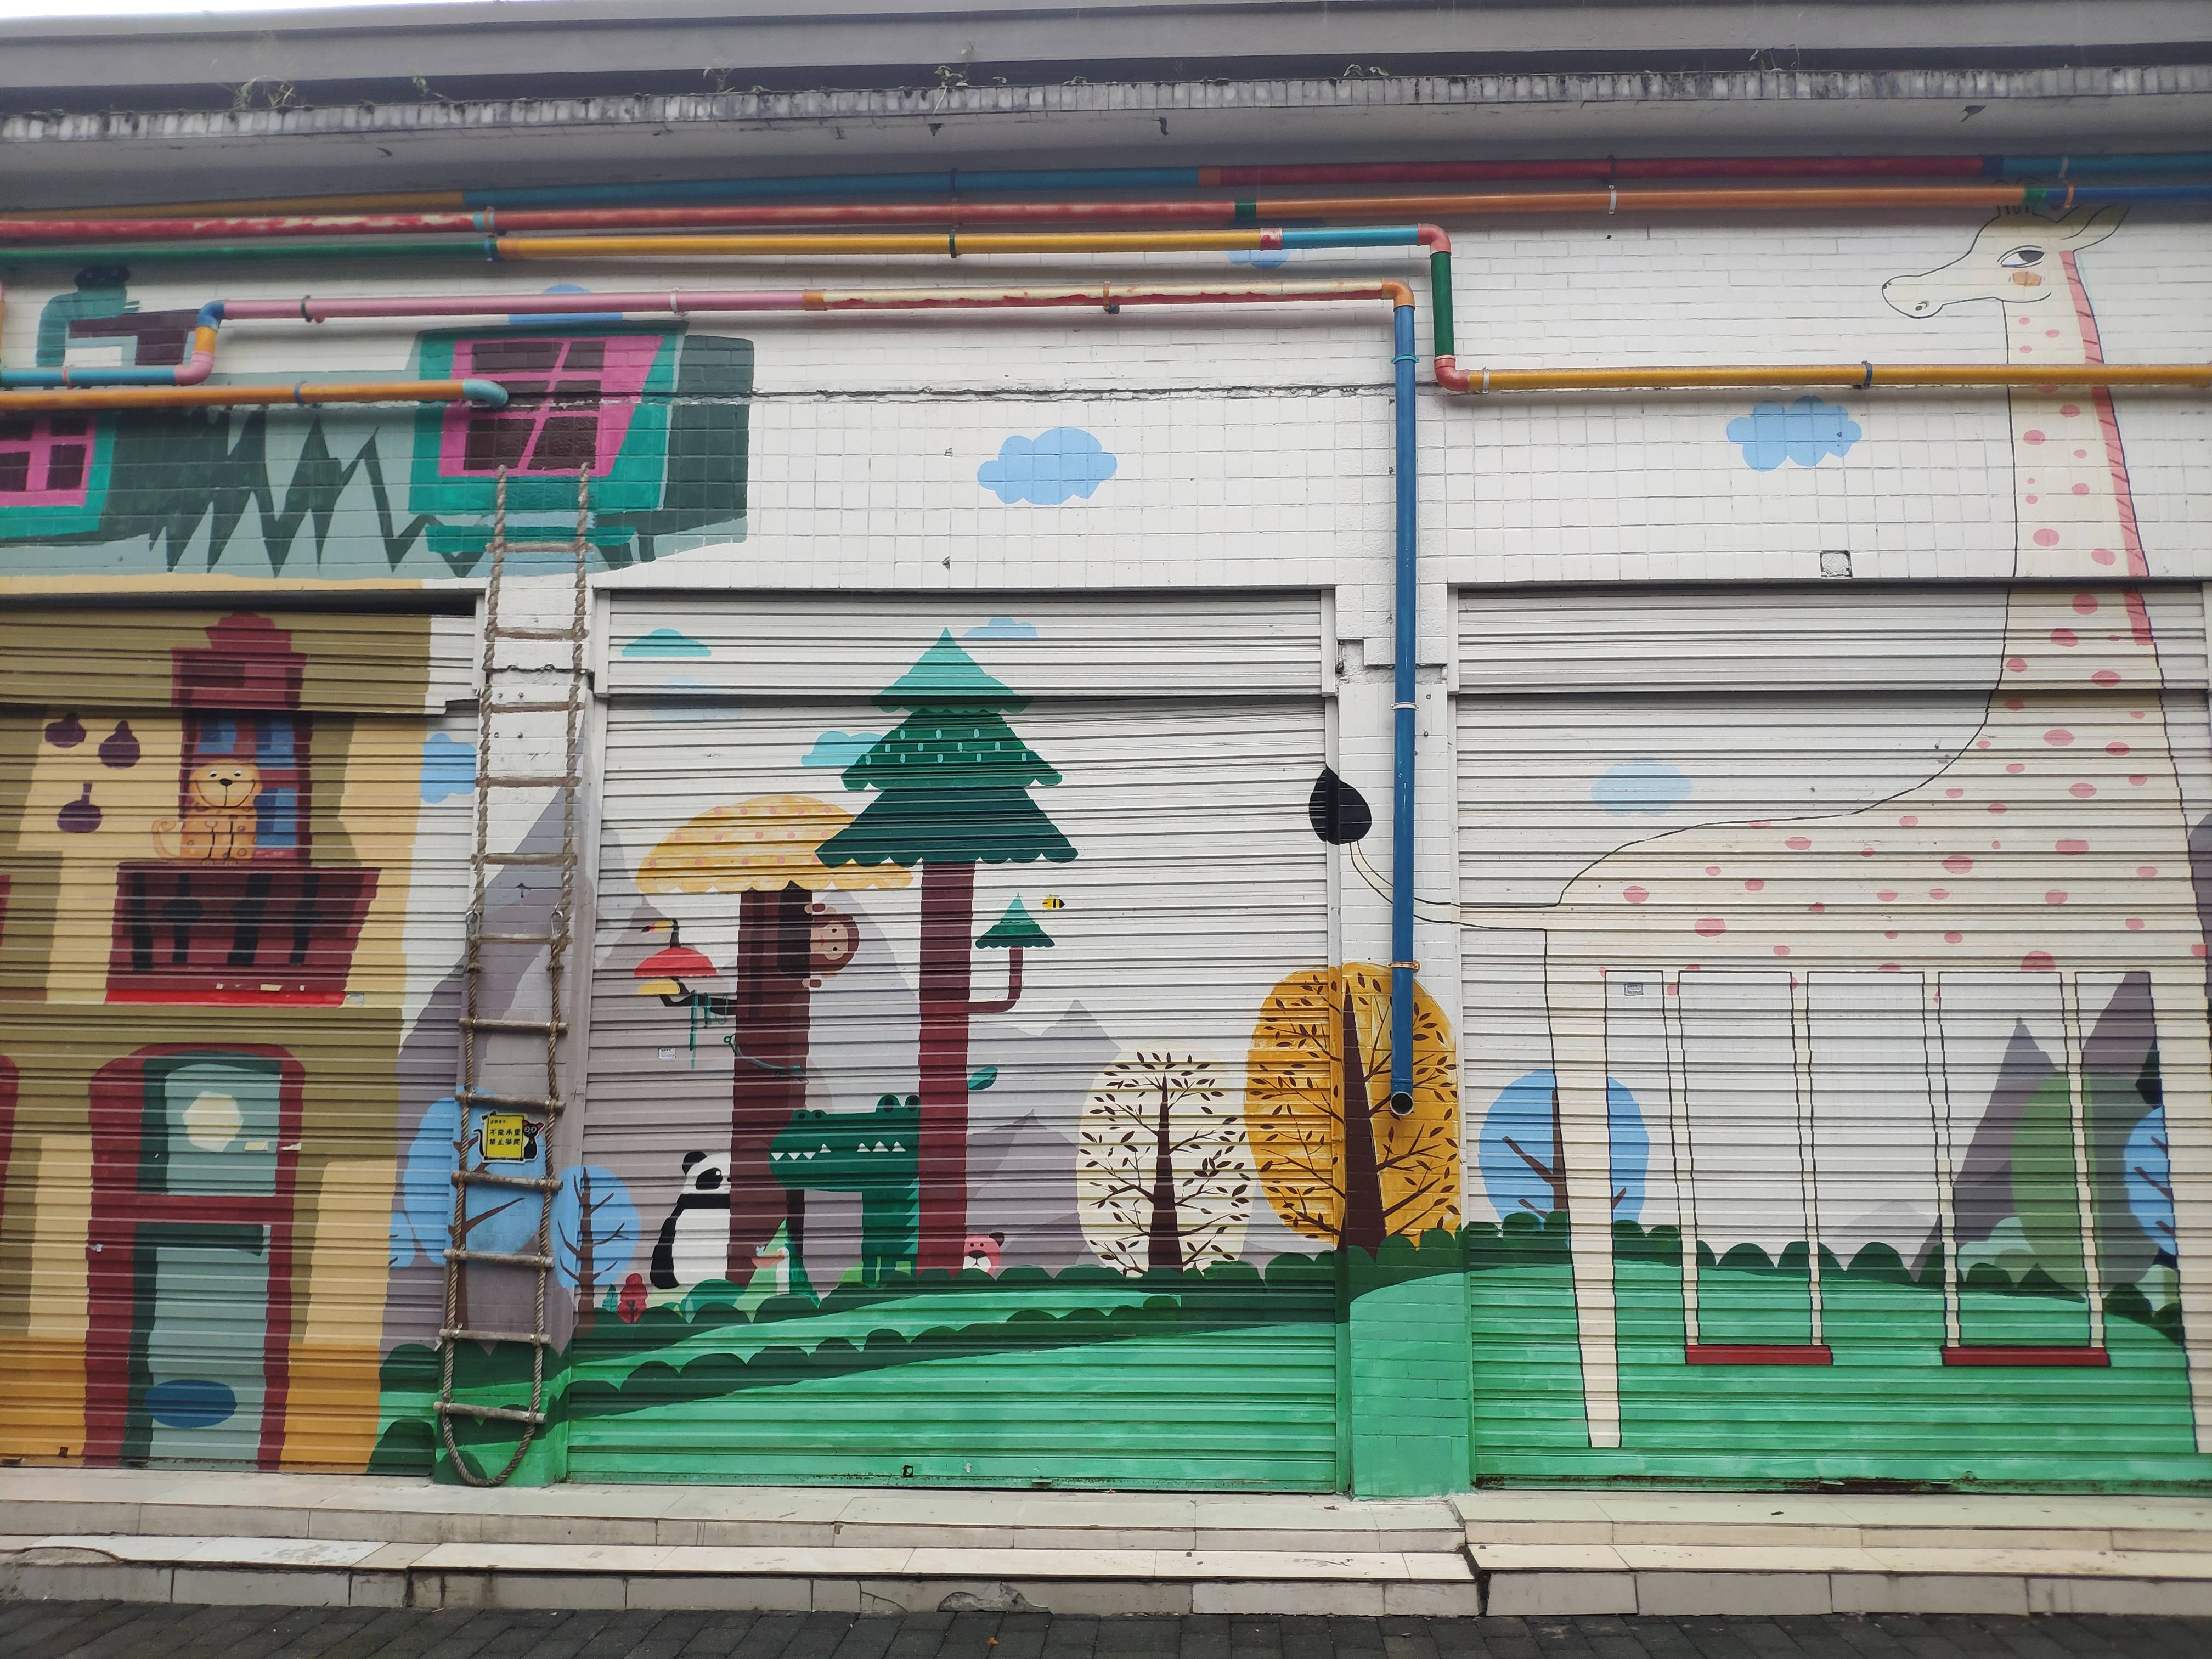 重庆街头现创意涂鸦门面,10个门面卷帘门彩绘成童话世界